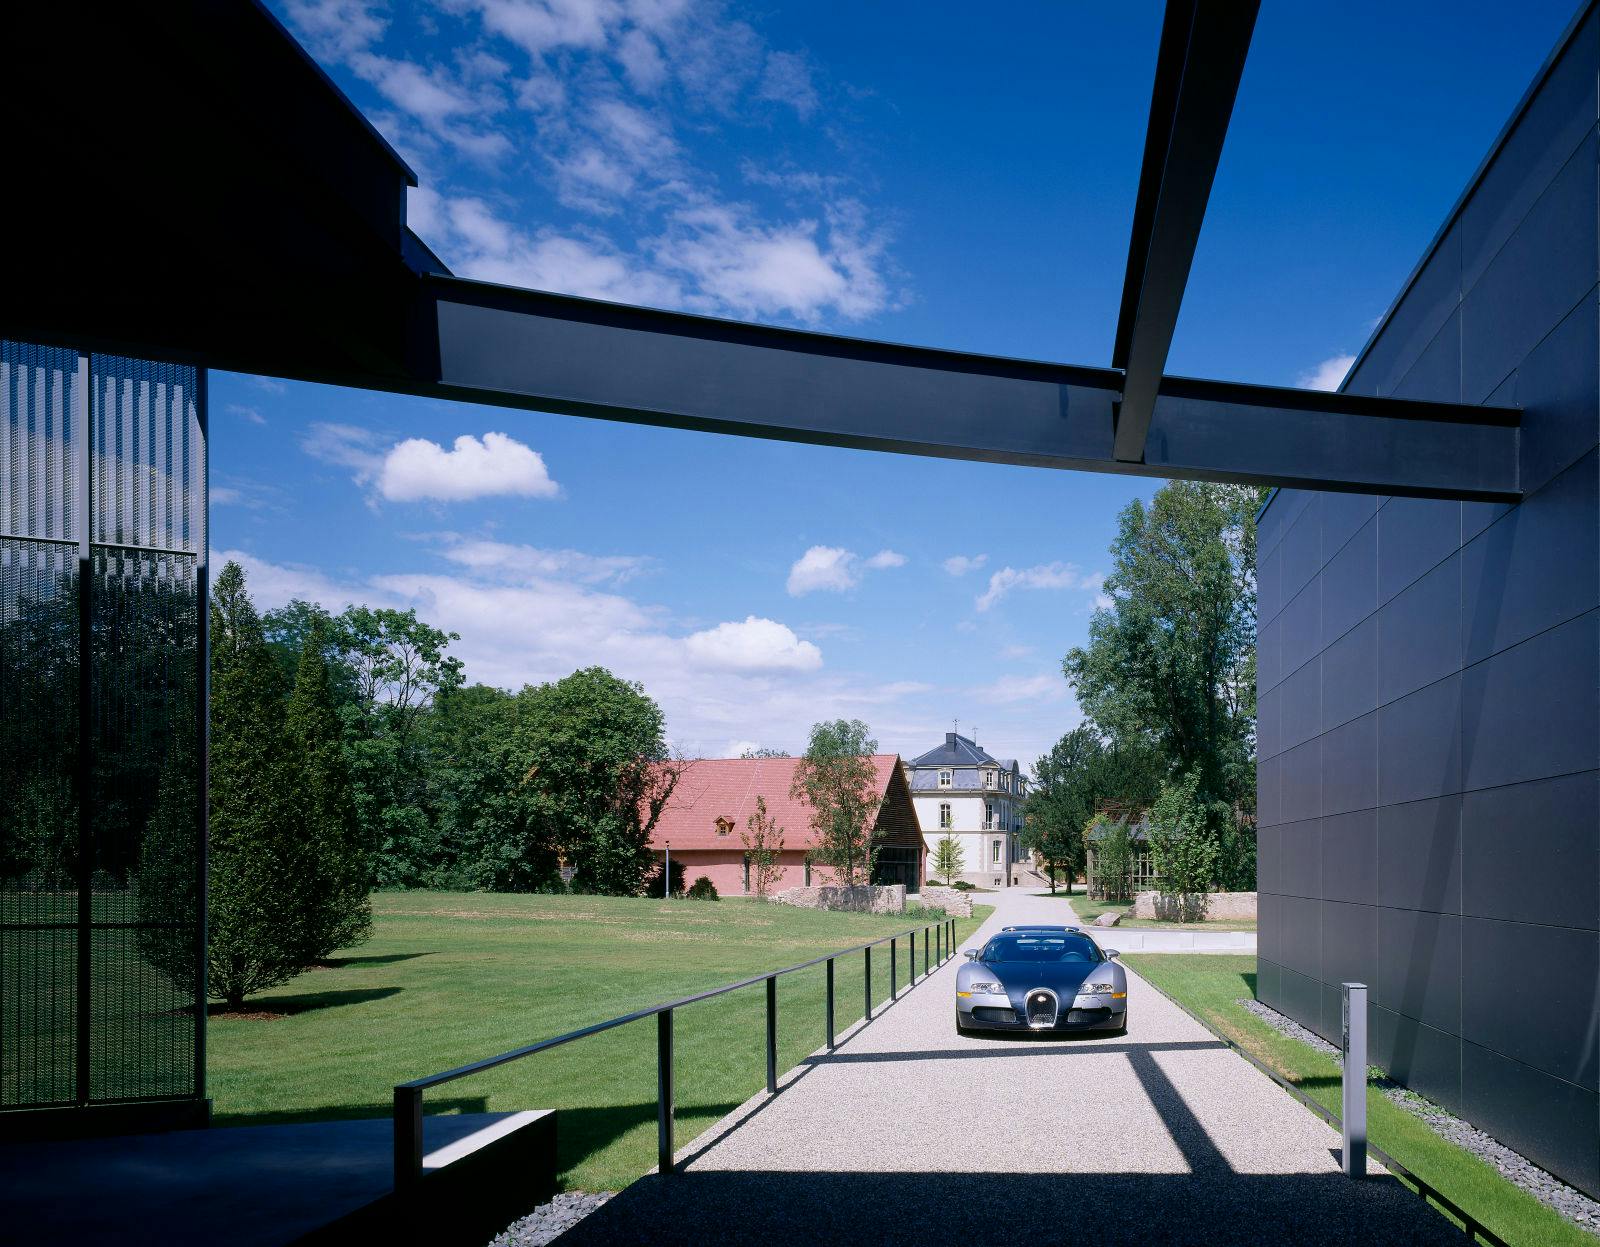 Der Bugatti Veyron 16.4 als Bindeglied zwischen der historischen Anlage und dem modernen Atelier